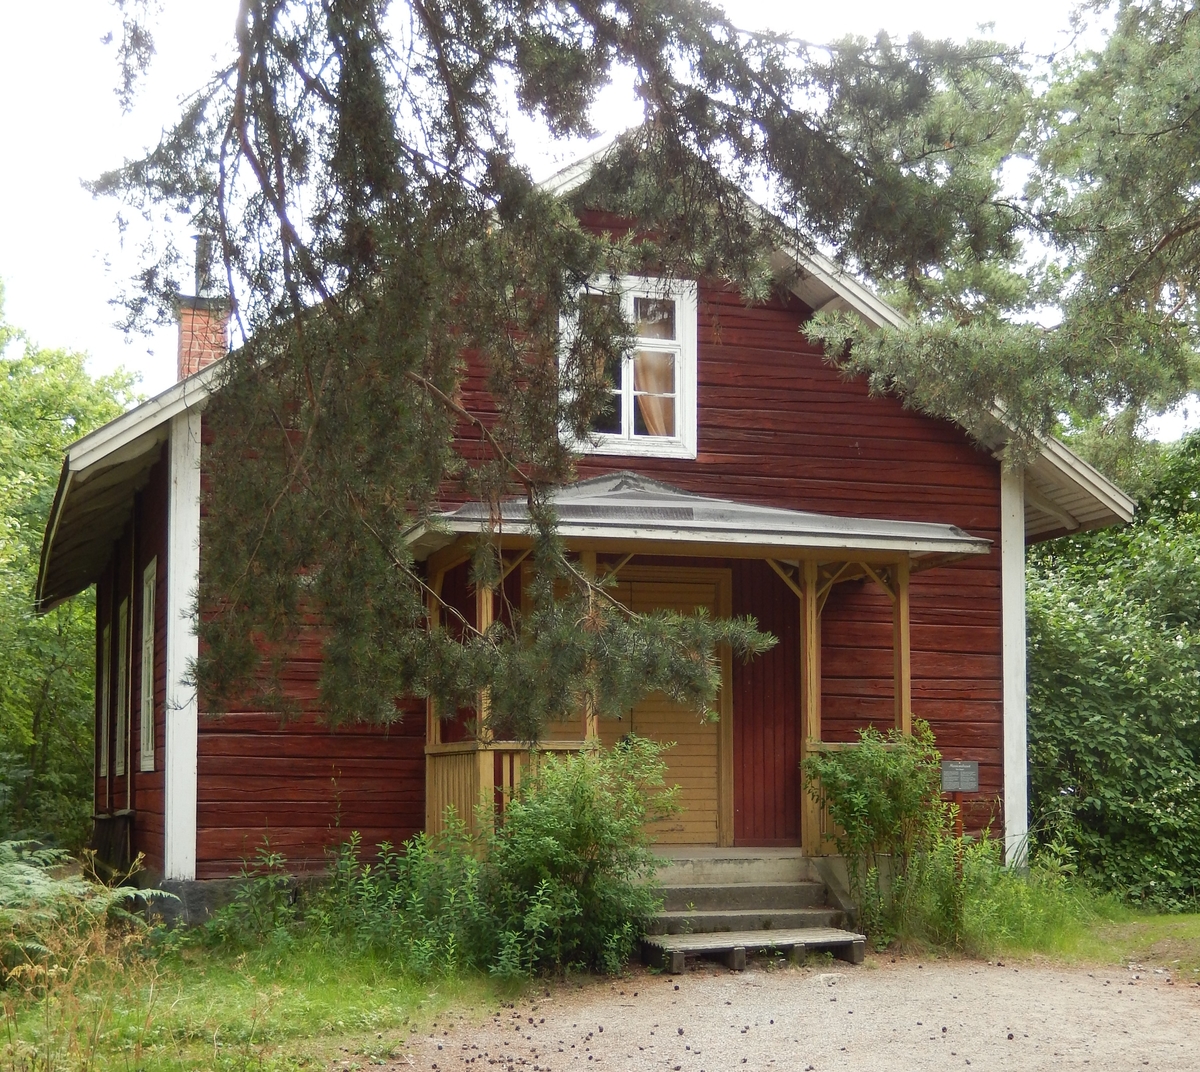 Missionshuset på Skansen är en timrad byggnad i en våning med sadeltak, klätt med spån. Fasaden är målad med röd slamfärg, snickerierna med vit linoljefärg. Ingången är placerad på gaveln och försedd med en veranda målad med gul linoljefärg.

Missionshuset uppfördes 1898 i en skogsglänta mellan gårdarna Svenshult och Rättvisan, Godegårds socken i Östergötland. Byggnaden återuppfördes på Skansen 1978.